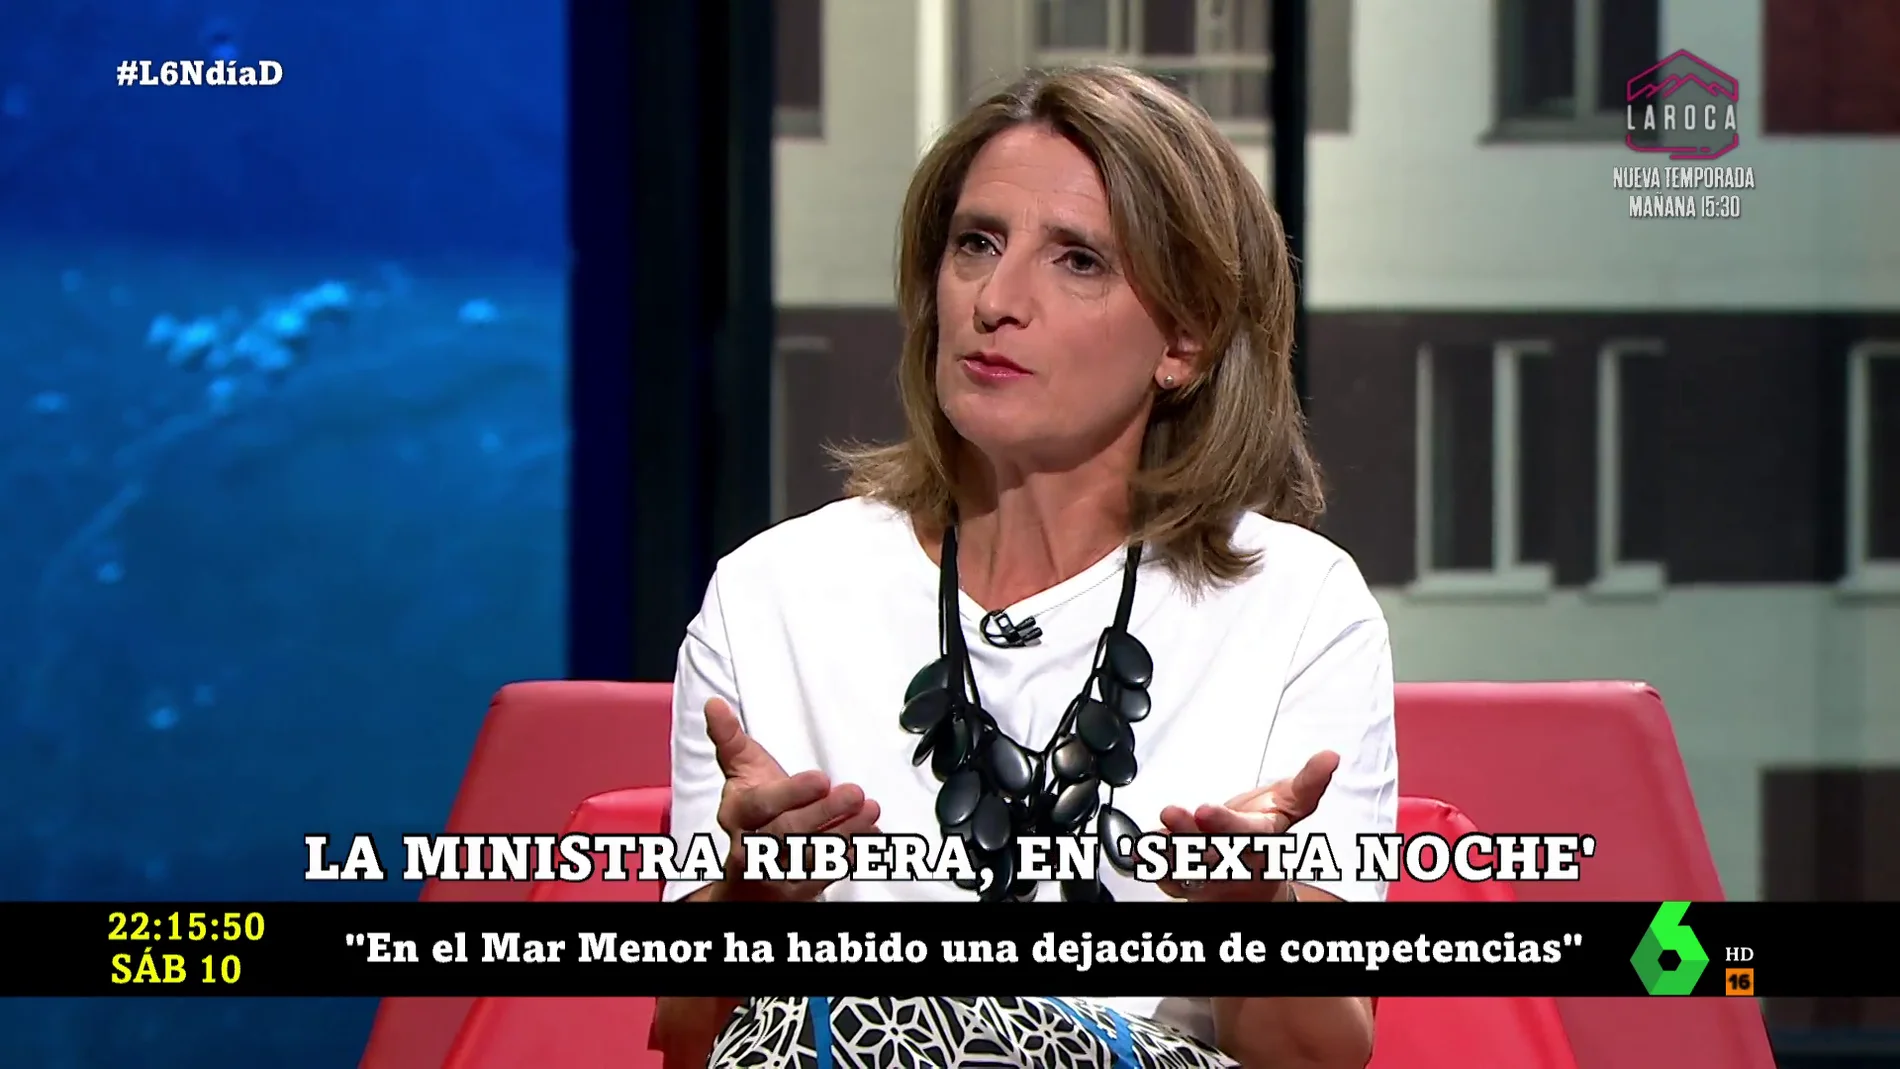 El mensaje de Teresa Ribera a los españoles a las puertas de un invierno sin precedentes: "Debemos estar preocupados, pero optimistas"